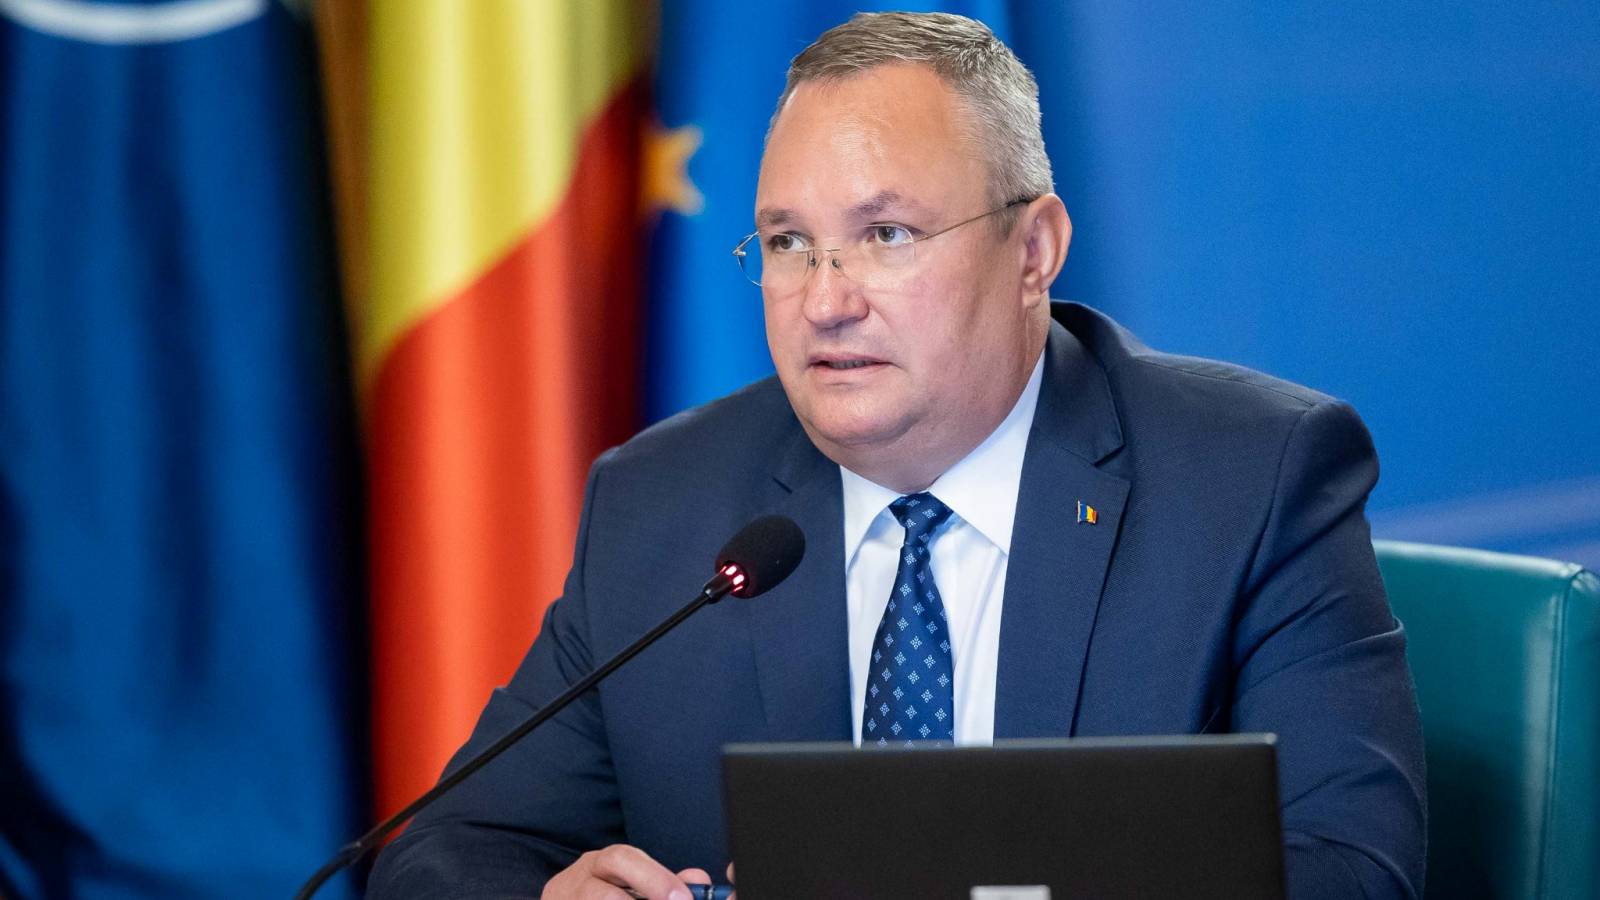 Nicolae Ciuca kündigt neue Regierungsmaßnahmen für Rumänien an